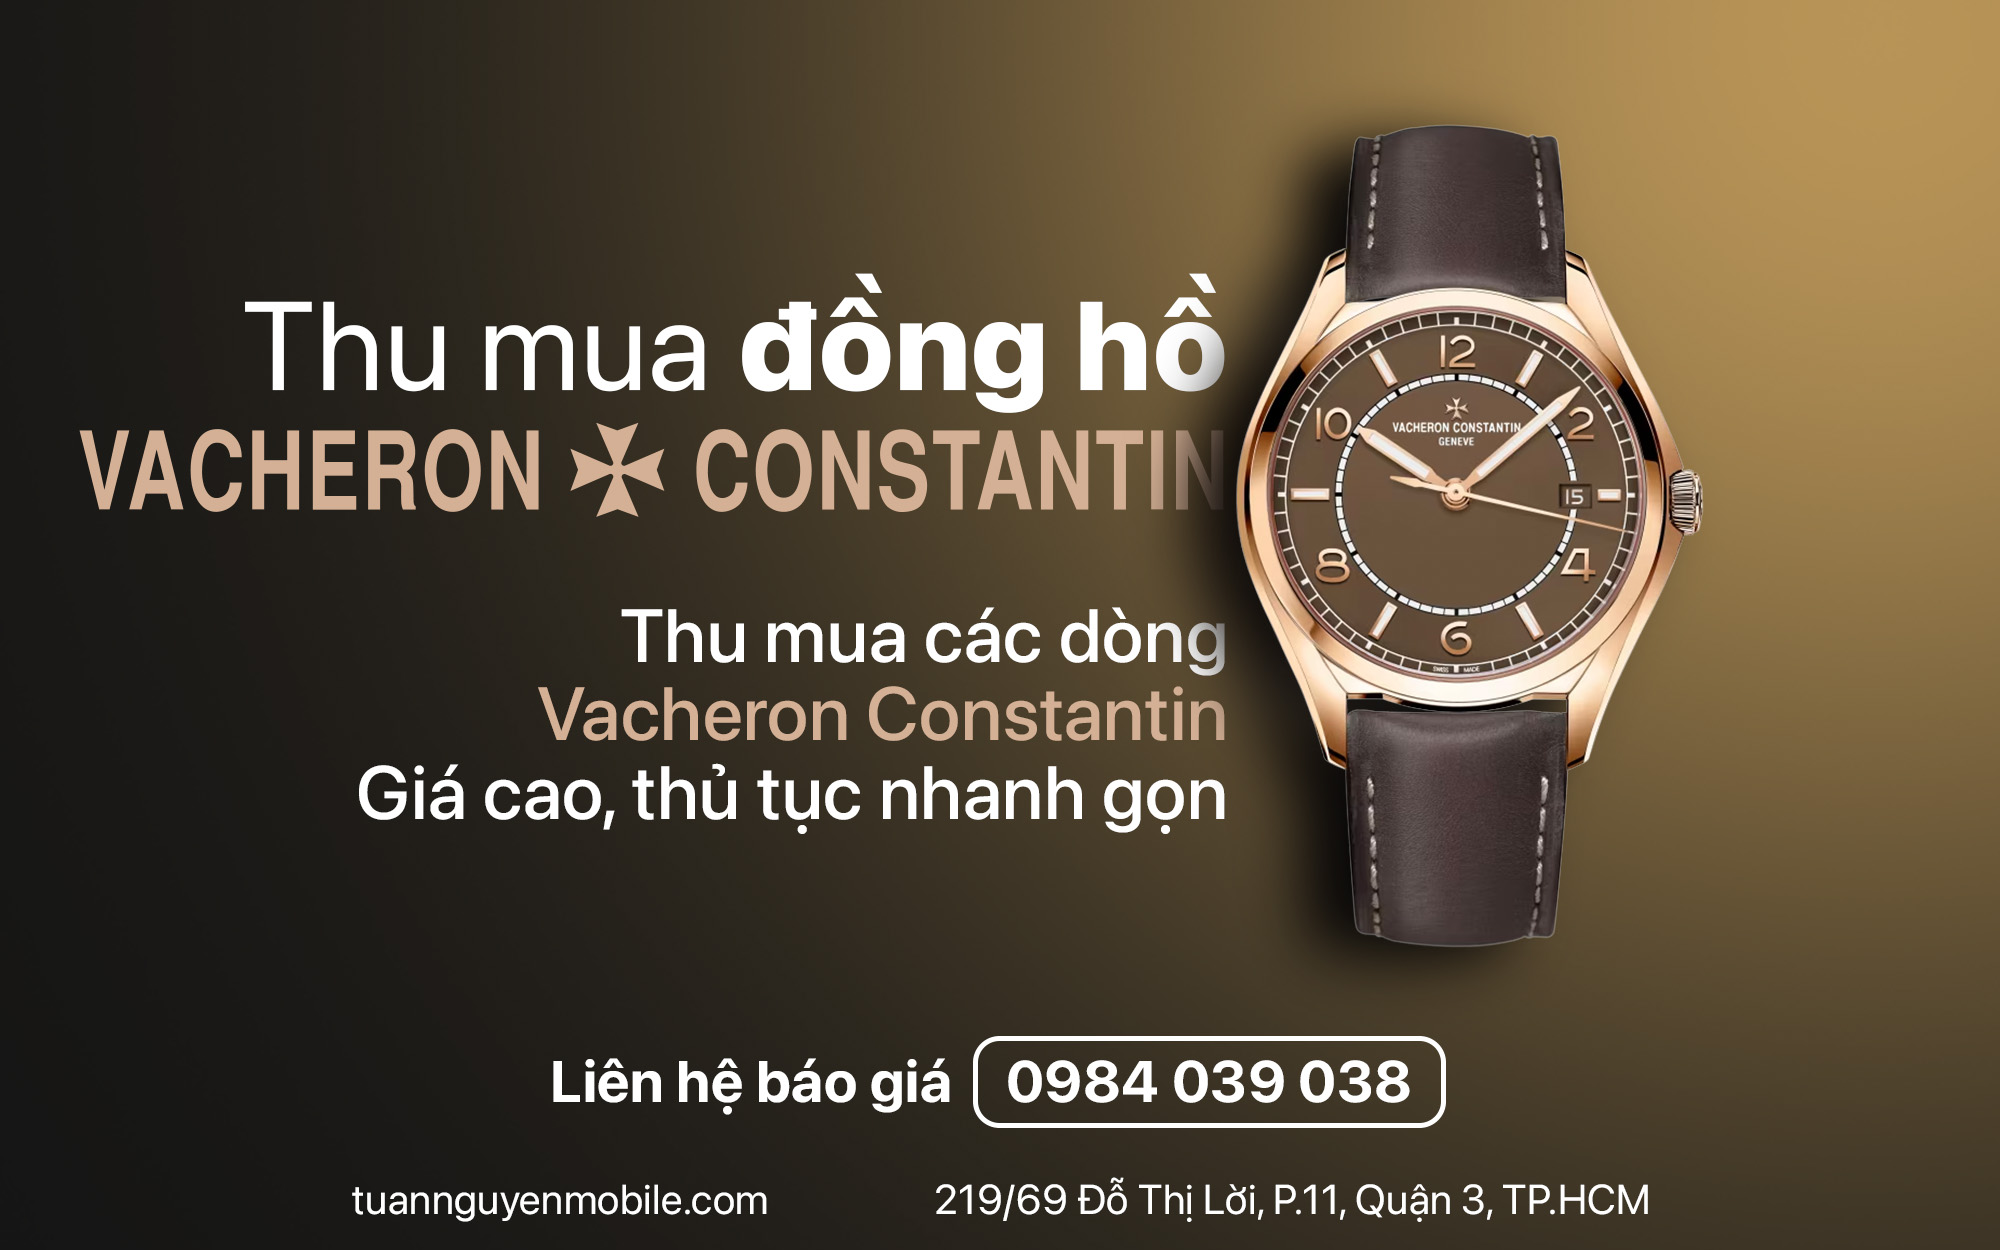 Địa chỉ thu mua đồng hồ Vacheron Constantin